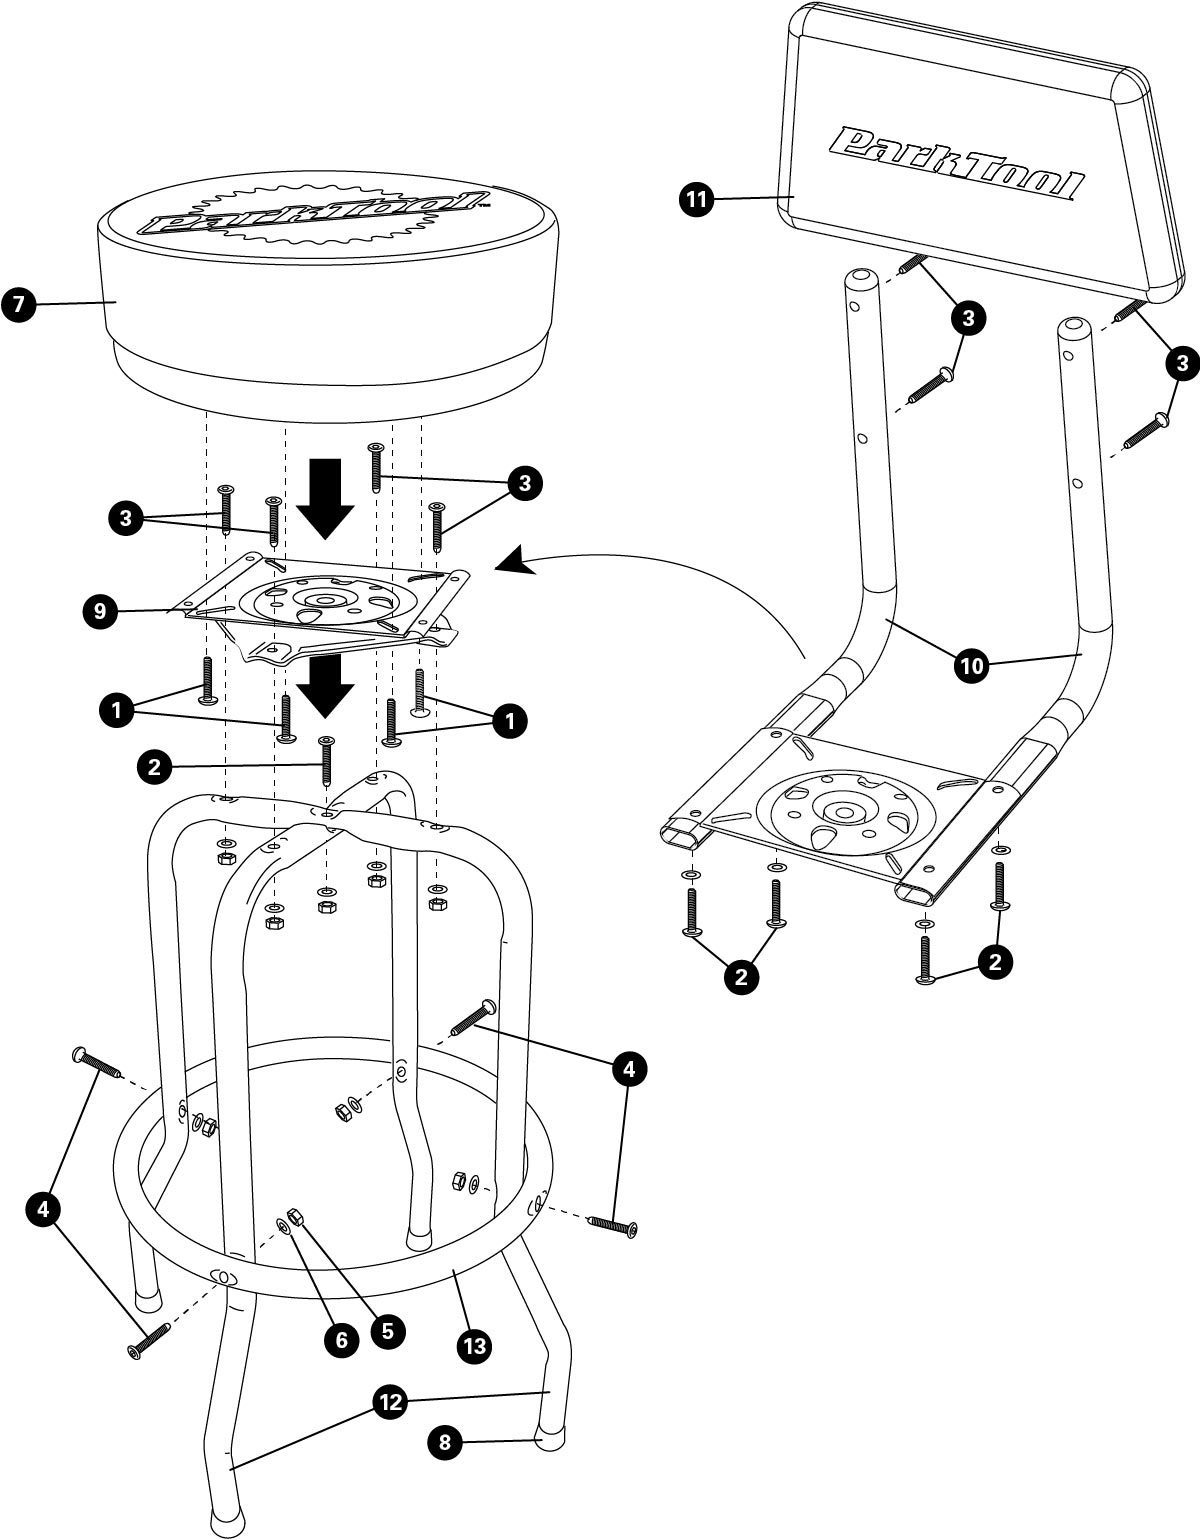 Parts diagram for STL-3K Shop Stool Backrest Kit, enlarged